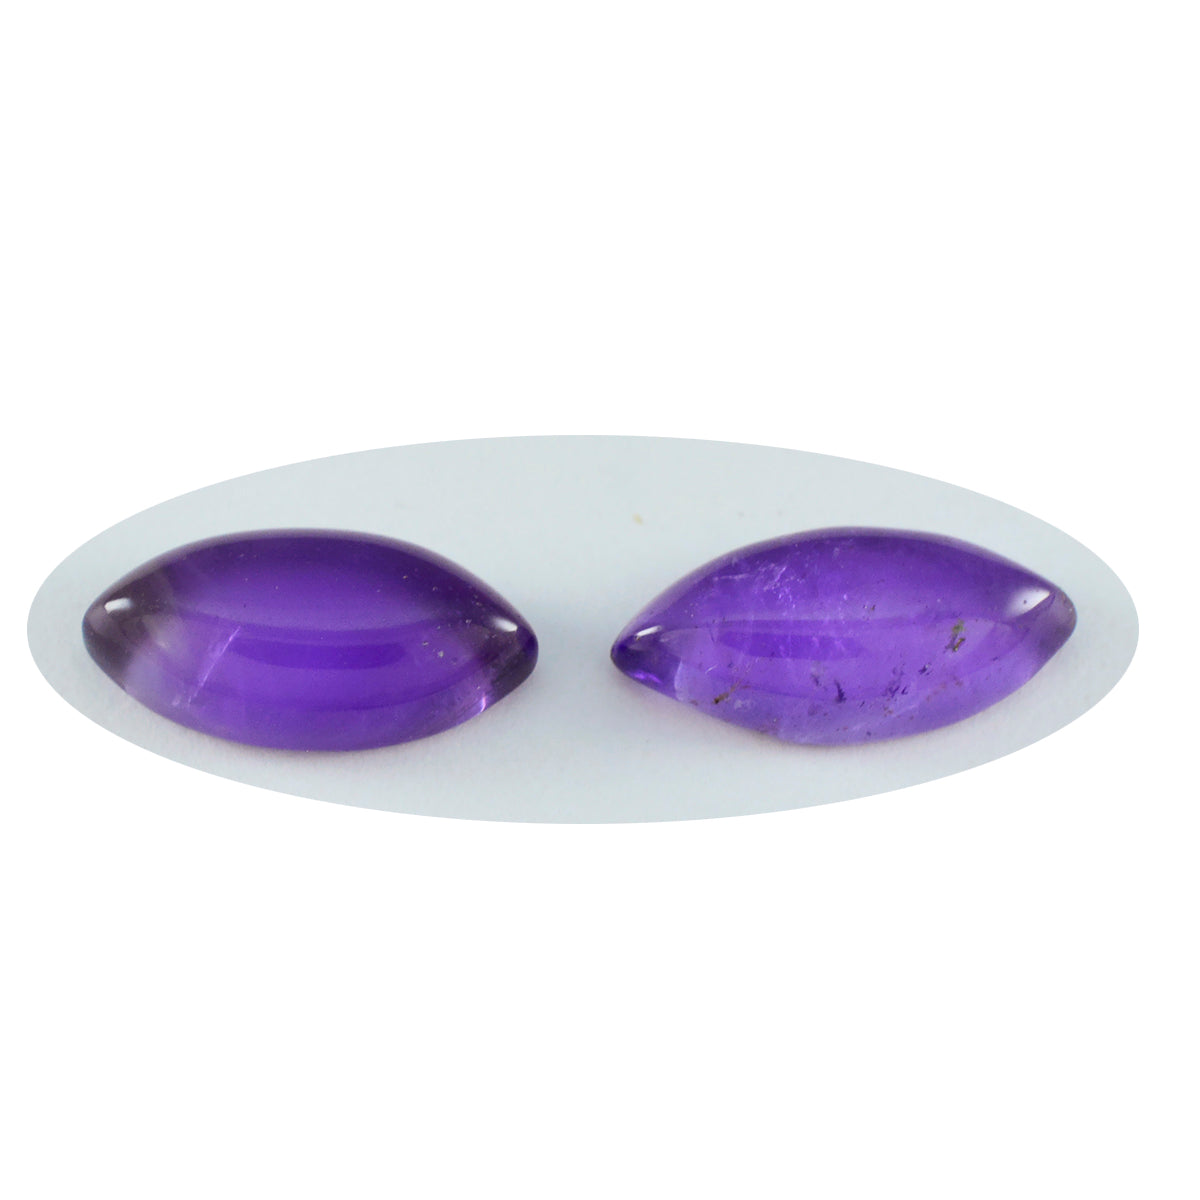 riyogems 1pc cabochon d'améthyste violette 10x20 mm forme marquise a+ qualité pierre précieuse en vrac